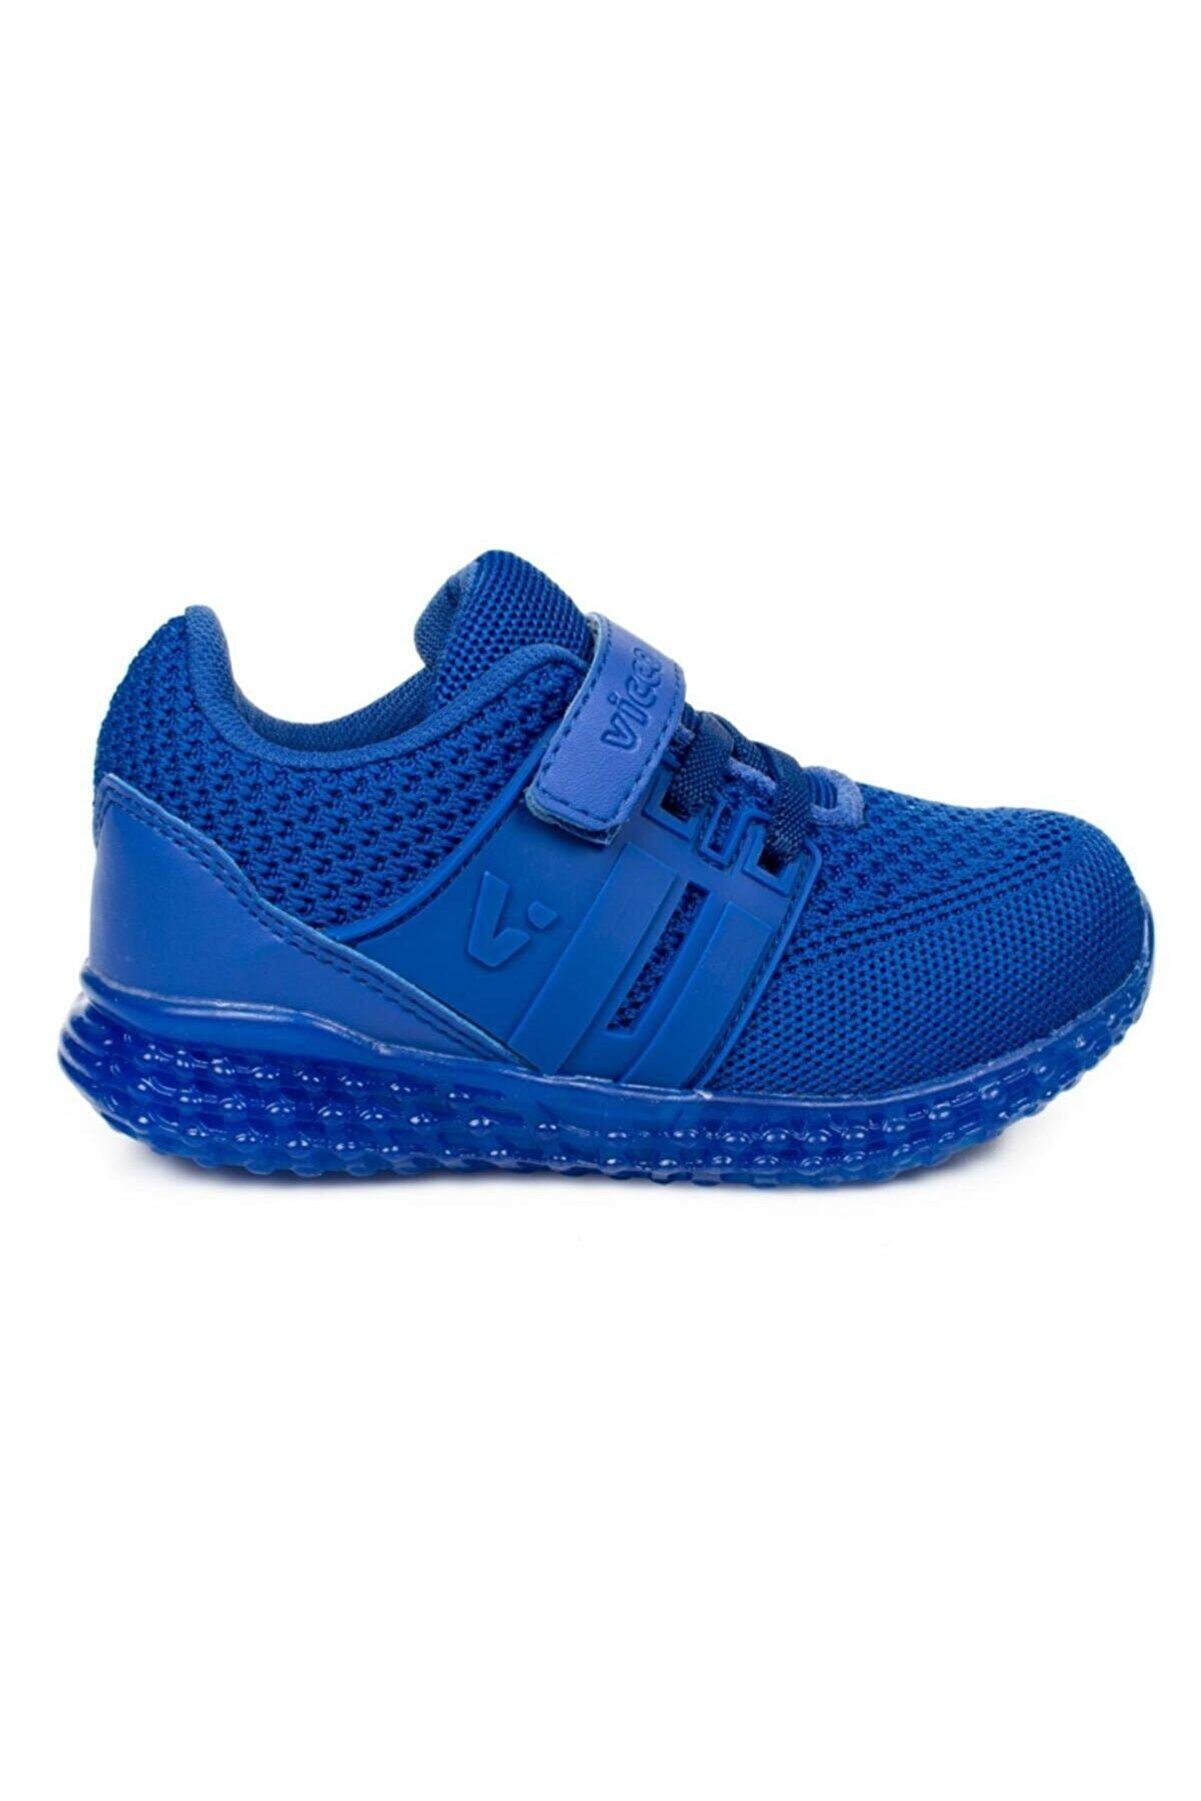 Vicco 313.b20y.102 Bebe Işıklı Mavi Çocuk Spor Ayakkabı